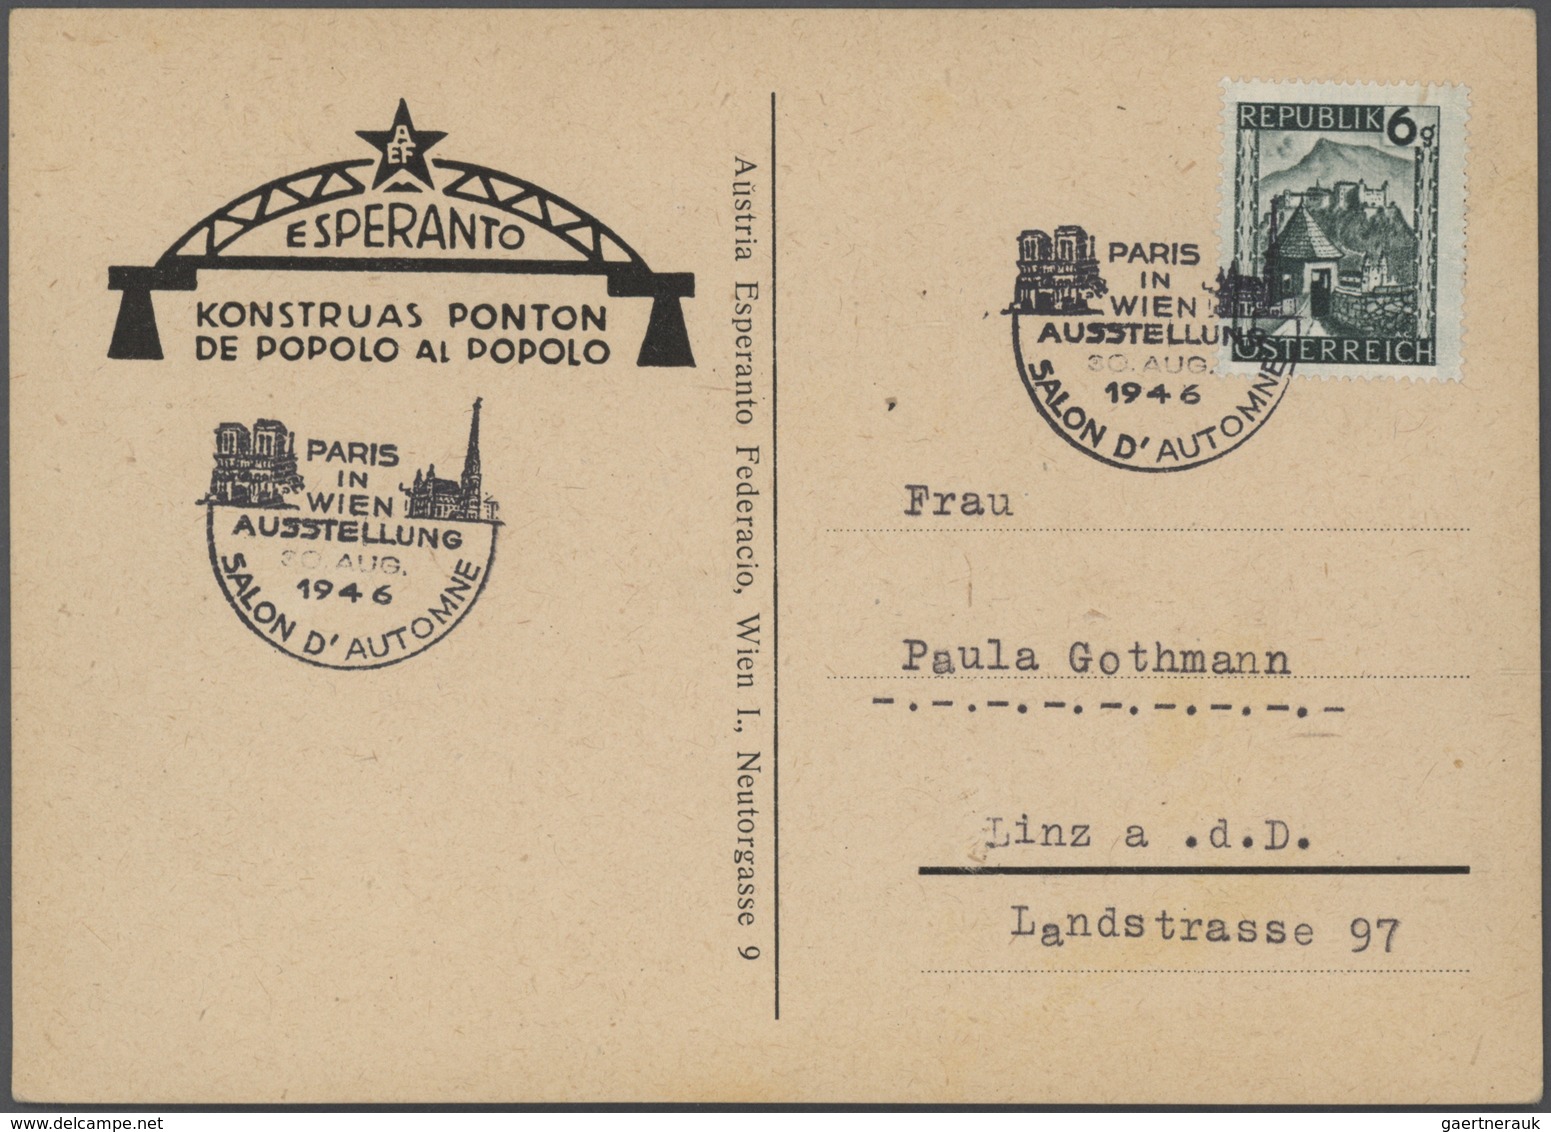 25032 Thematik: Esperanto: 1923/1989 (ca.), sehr interessante Partie mit 160 Briefen und Karten europäisch